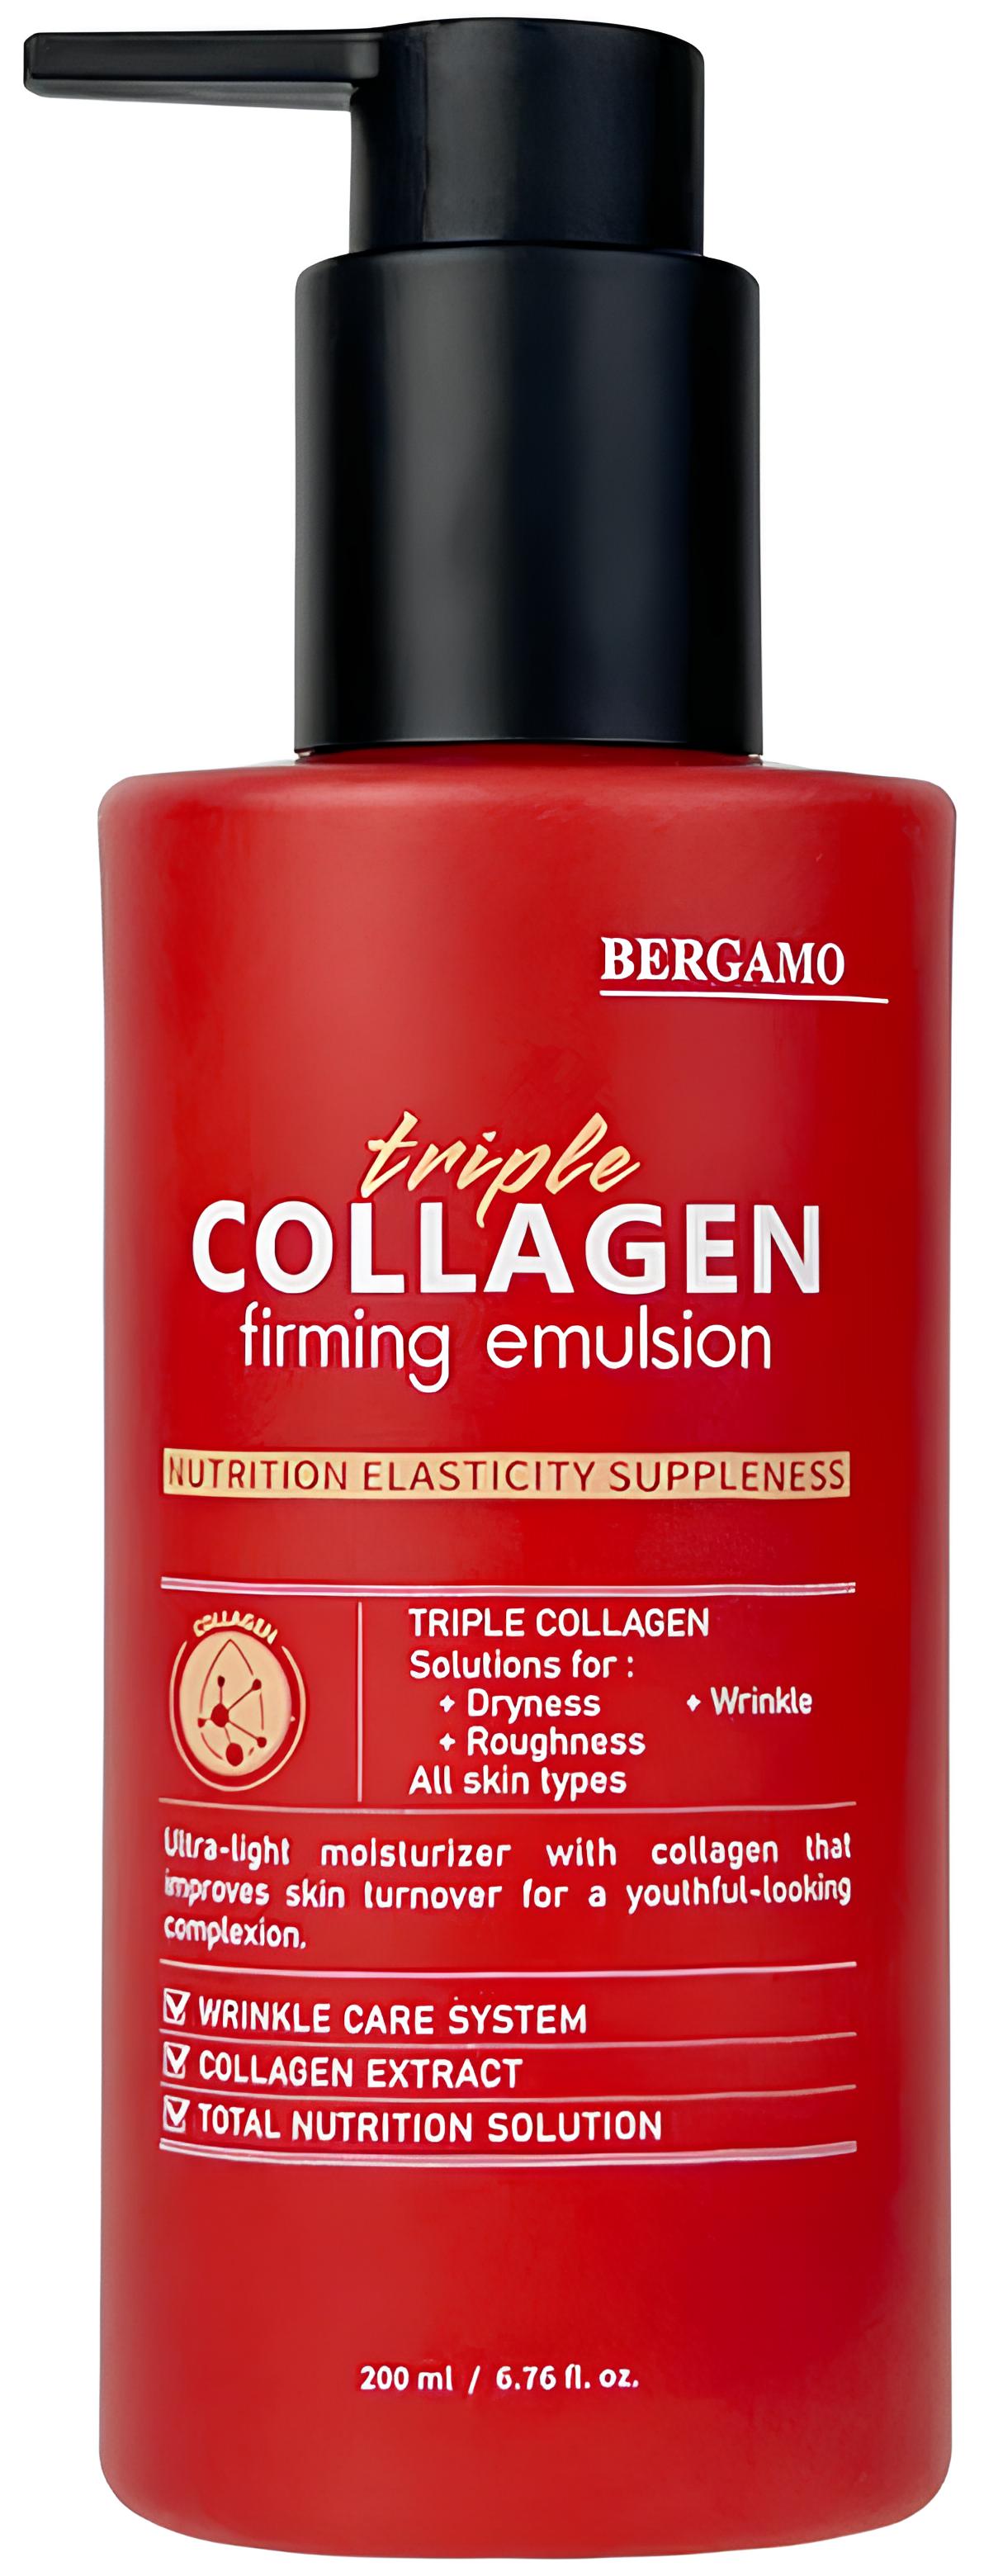 Укрепляющая эмульсия с тройным коллагеном Bergamo Triple Collagen Firming Emulsion 200 мл foodaholic омолаживающая эмульсия с коллагеном nature collagen